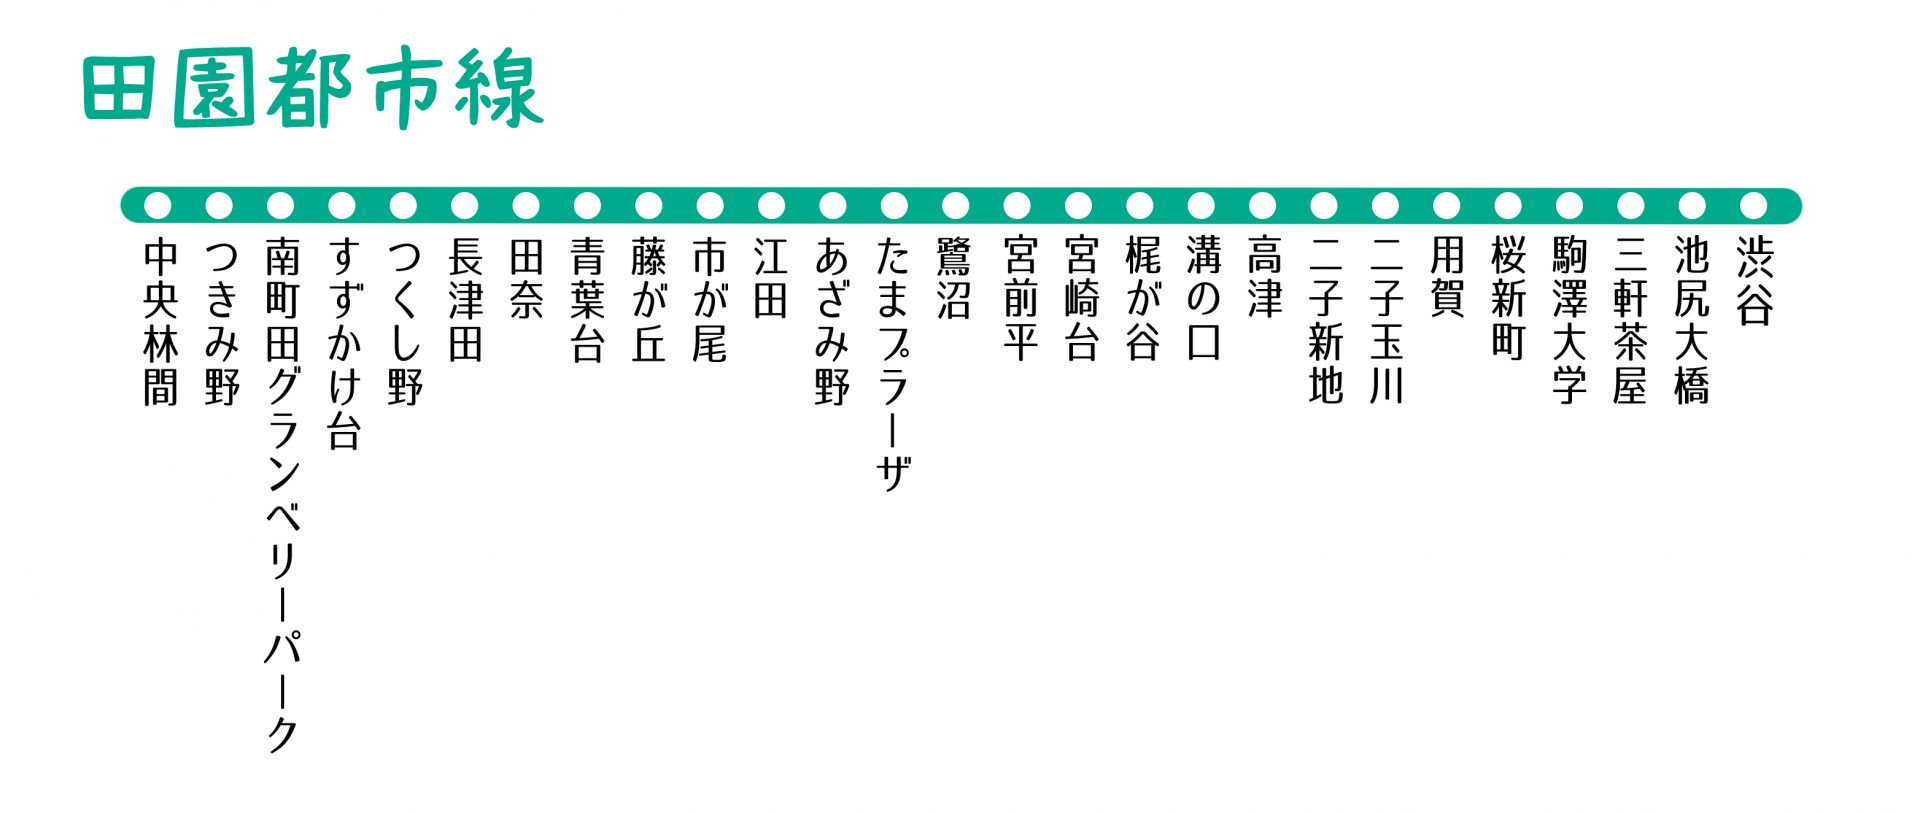 東急田園都市線の駅一覧。